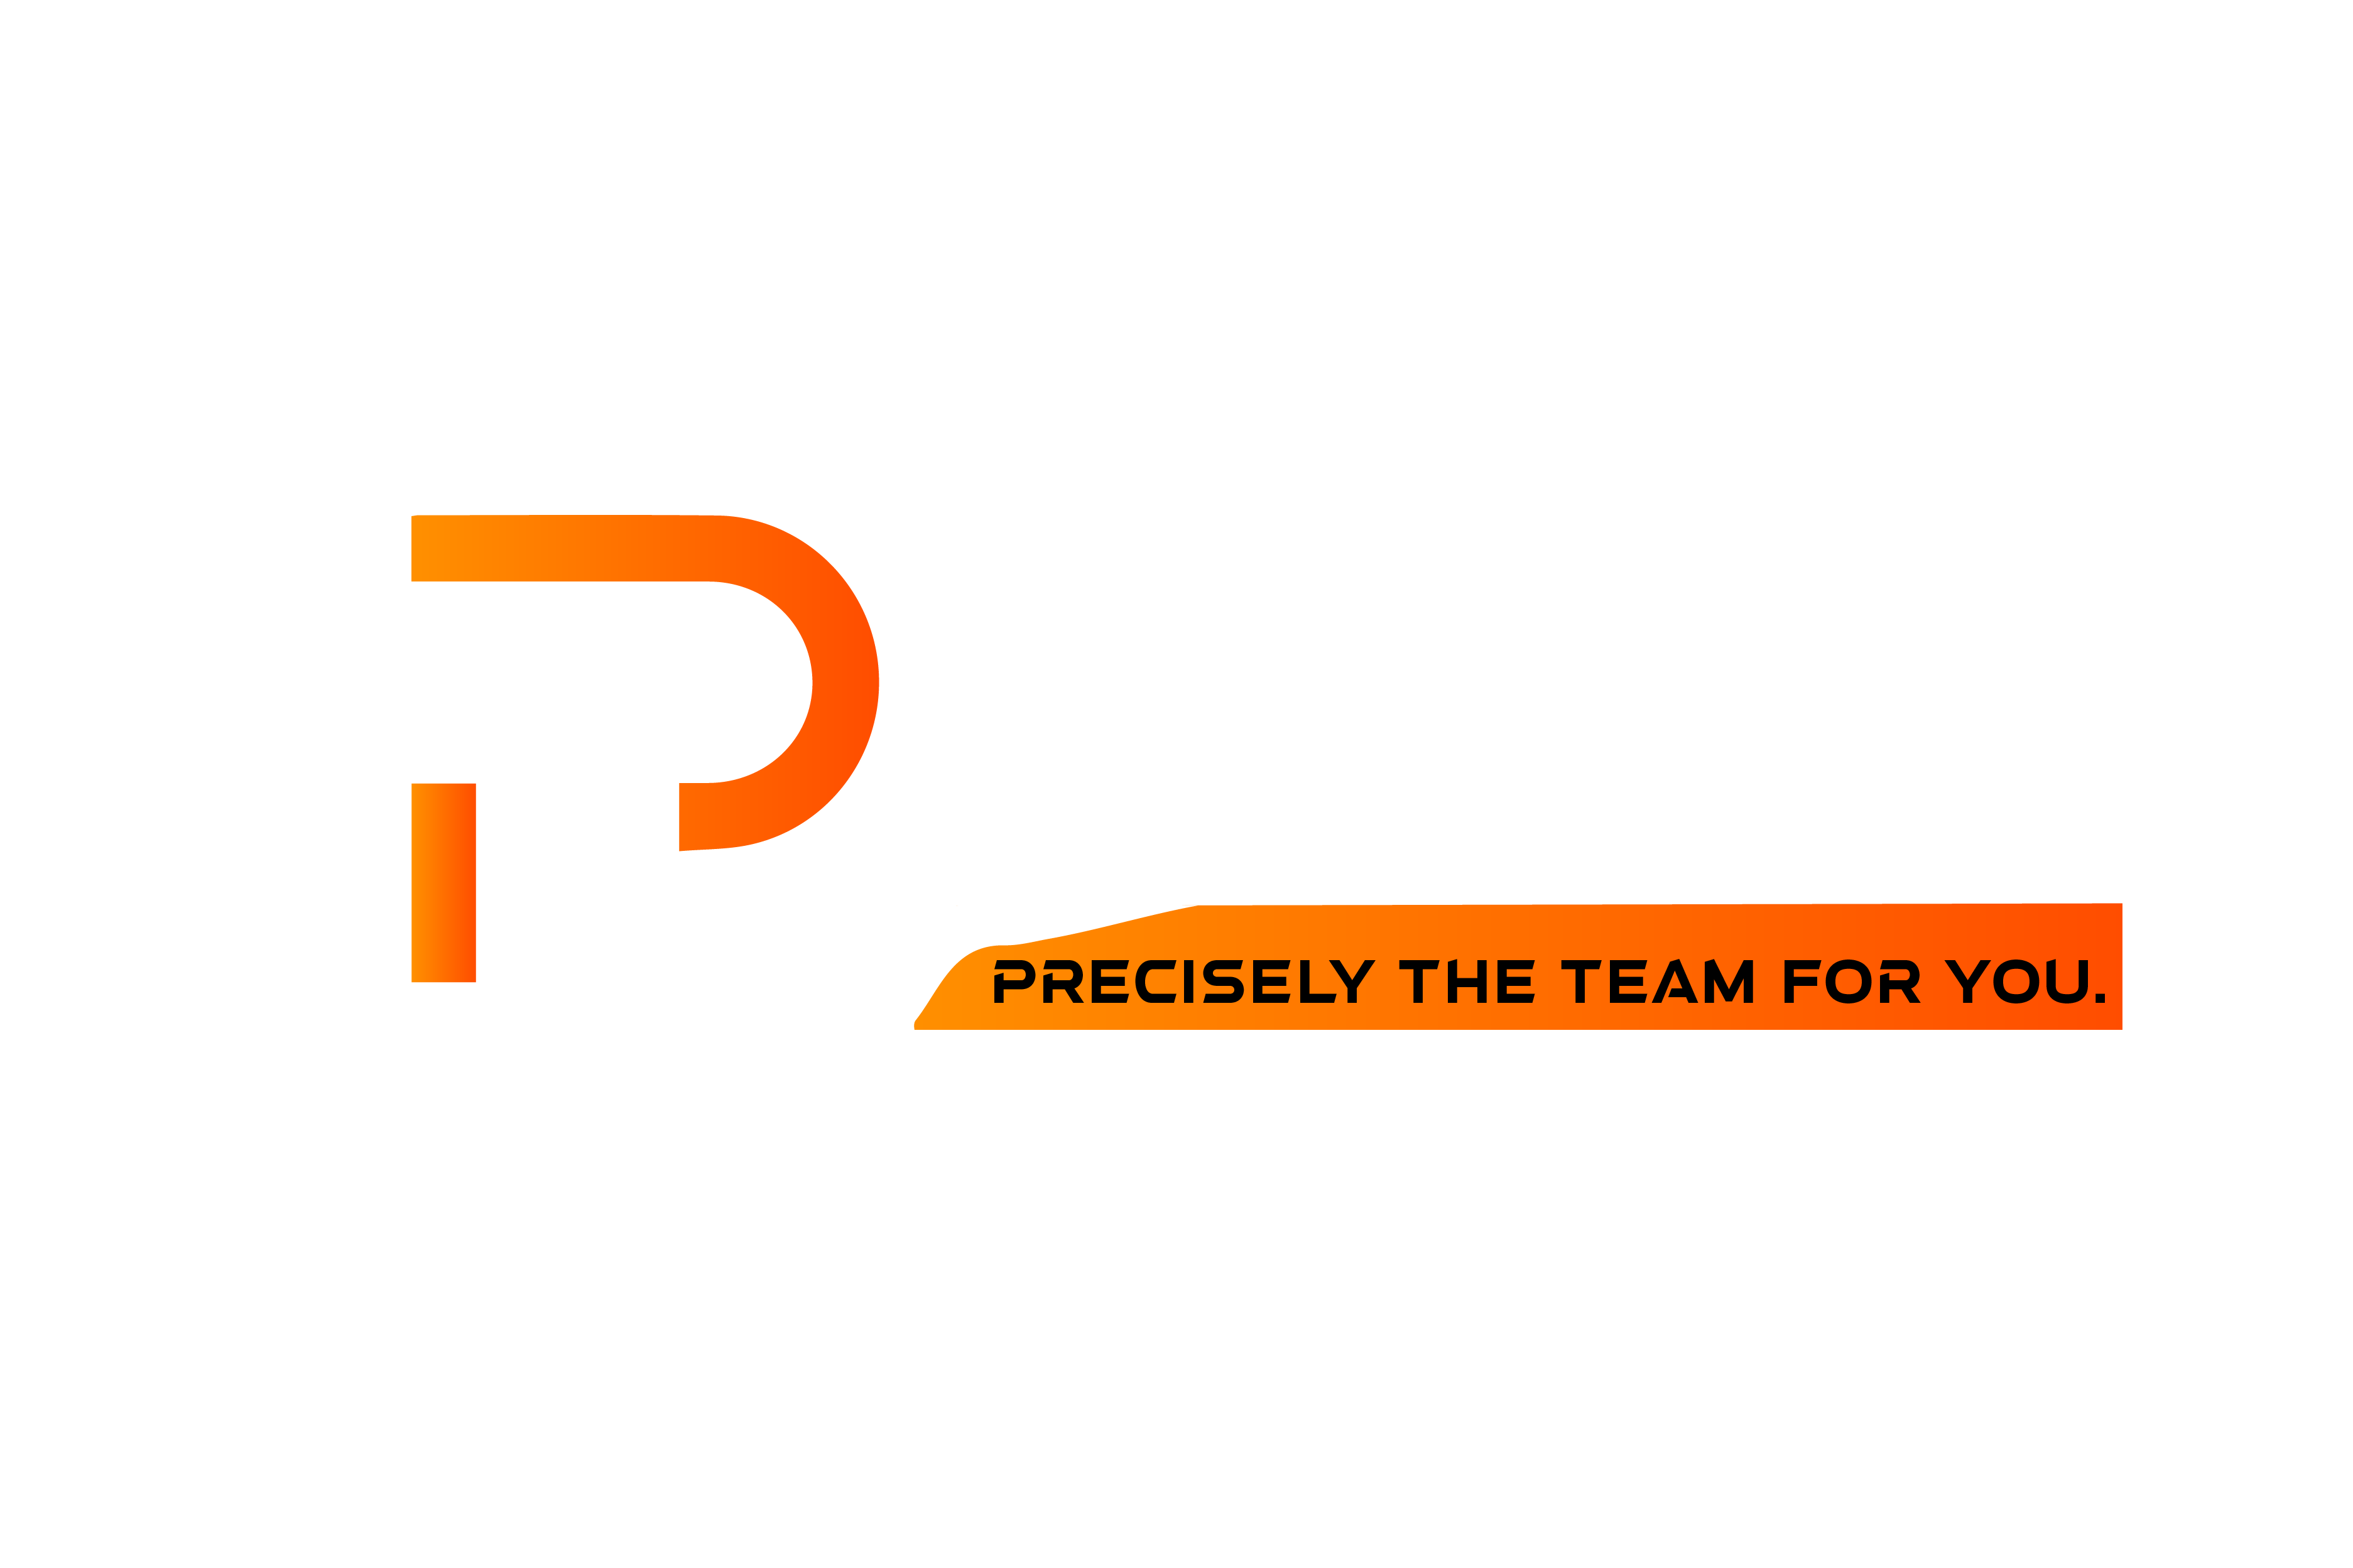 Precise Team Inc.